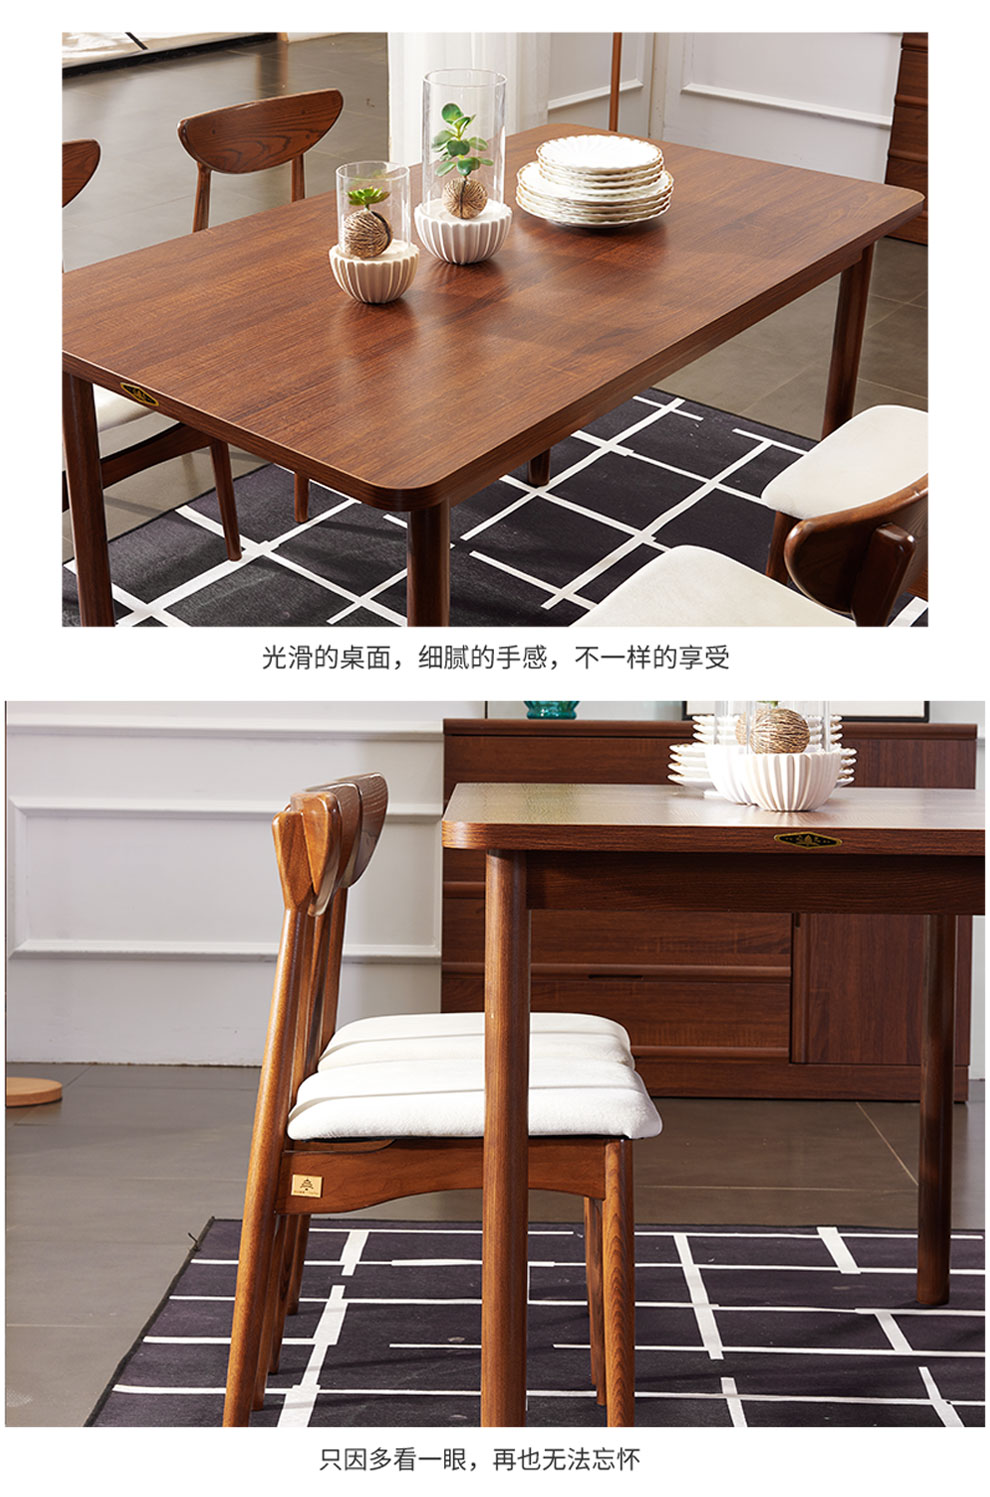 【清】天坛家具 简易家用餐桌椅组合 小户型现代简约 餐桌饭桌 长方形